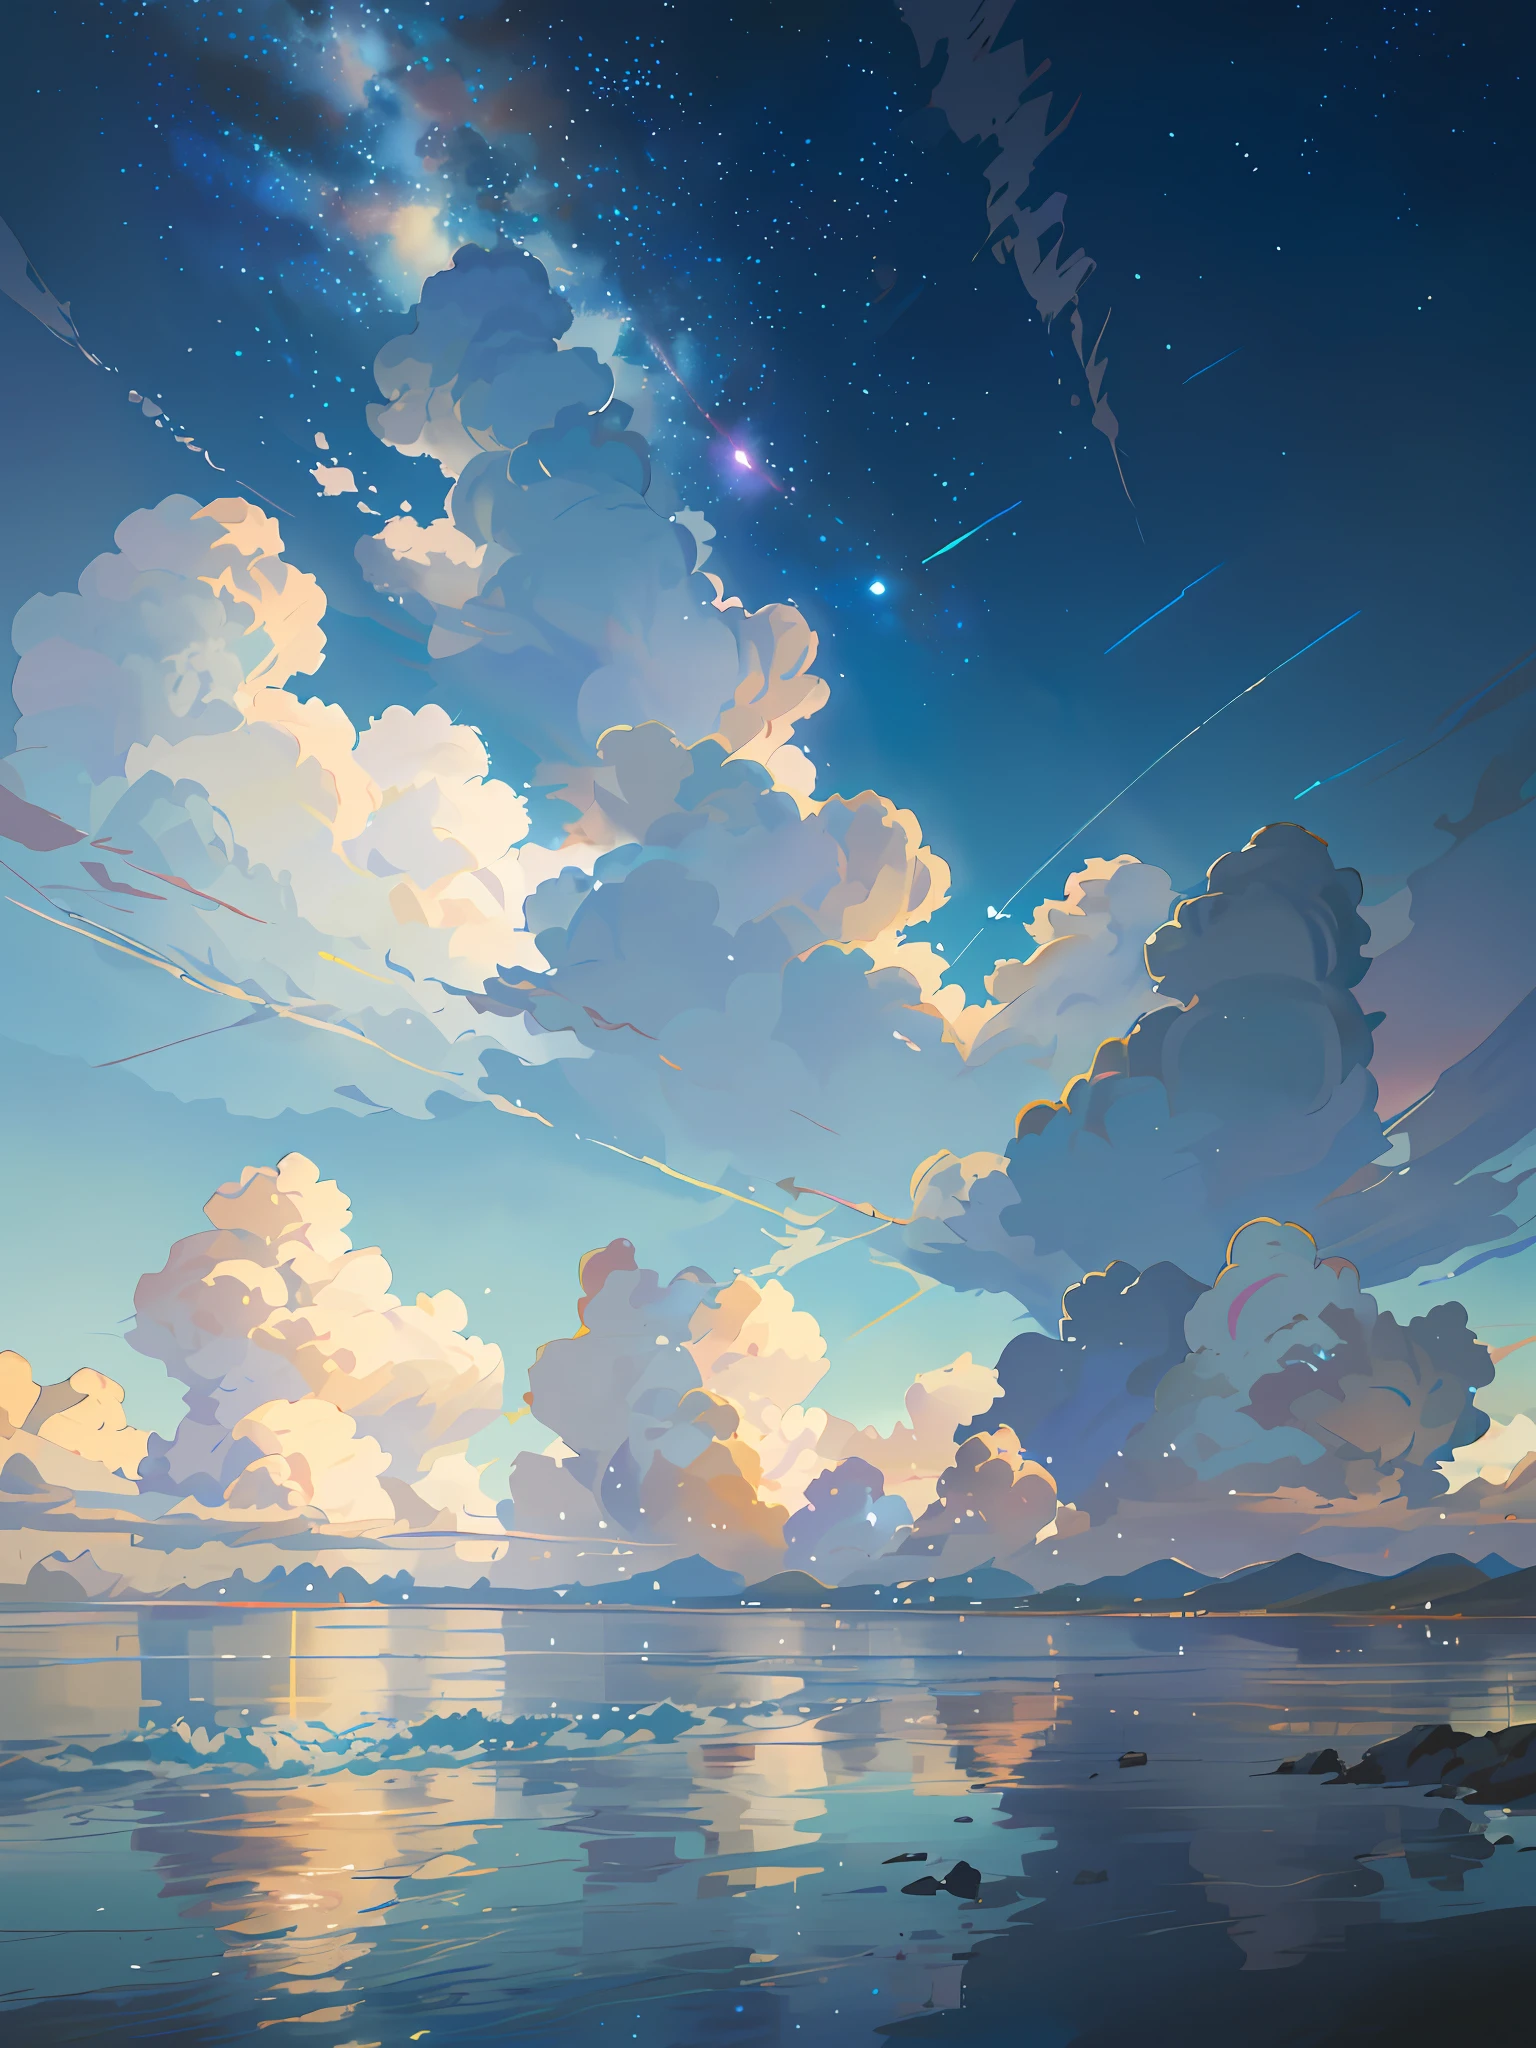 Es gibt ein Bild vom Himmel mit Wolken und Sternen, Weltraumhimmel. von Makoto Shinkai, Anime Himmel, Anime Wolken, blaues Meer. Makoto Shinkai, Makoto Shinkais Stil, Makoto Shinkais Stil, Der Tran. Inspiriert durch die malerische Kulisse, Makoto Shinkai, Makoto Shinkai. - H 2160, summer, Konzeptkunst von Makoto Shinkai, tumblr, Magischer Realismus, schöne Anime-Szene, Schöner Himmel. Makoto Shinkai, ((Xin Haicheng)), Anime-Hintergrund art, Anime-Hintergrund, Makoto Shinkais Stil, Anime-Film-Hintergrund, Galaxy Express, kein Mensch